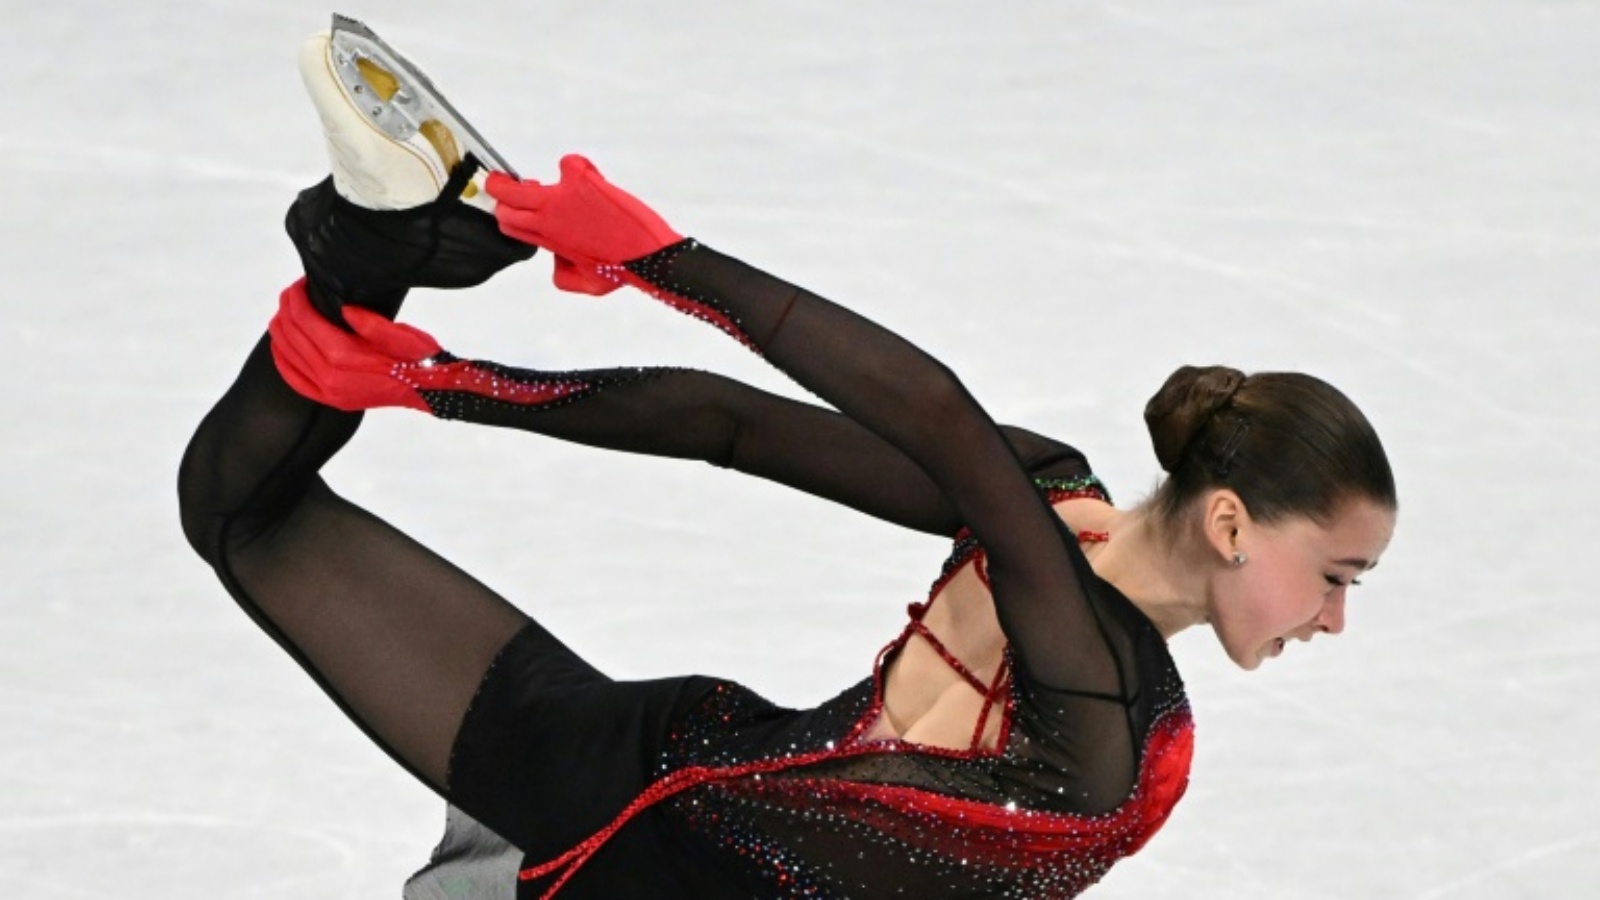 سُمح للروسية اليافعة كاميلا فالييفا البالغة 15 عامًا بالمنافسة في أولمبياد بكين على الرغم من إخفاقها في اختبار للمنشطات قبل الألعاب